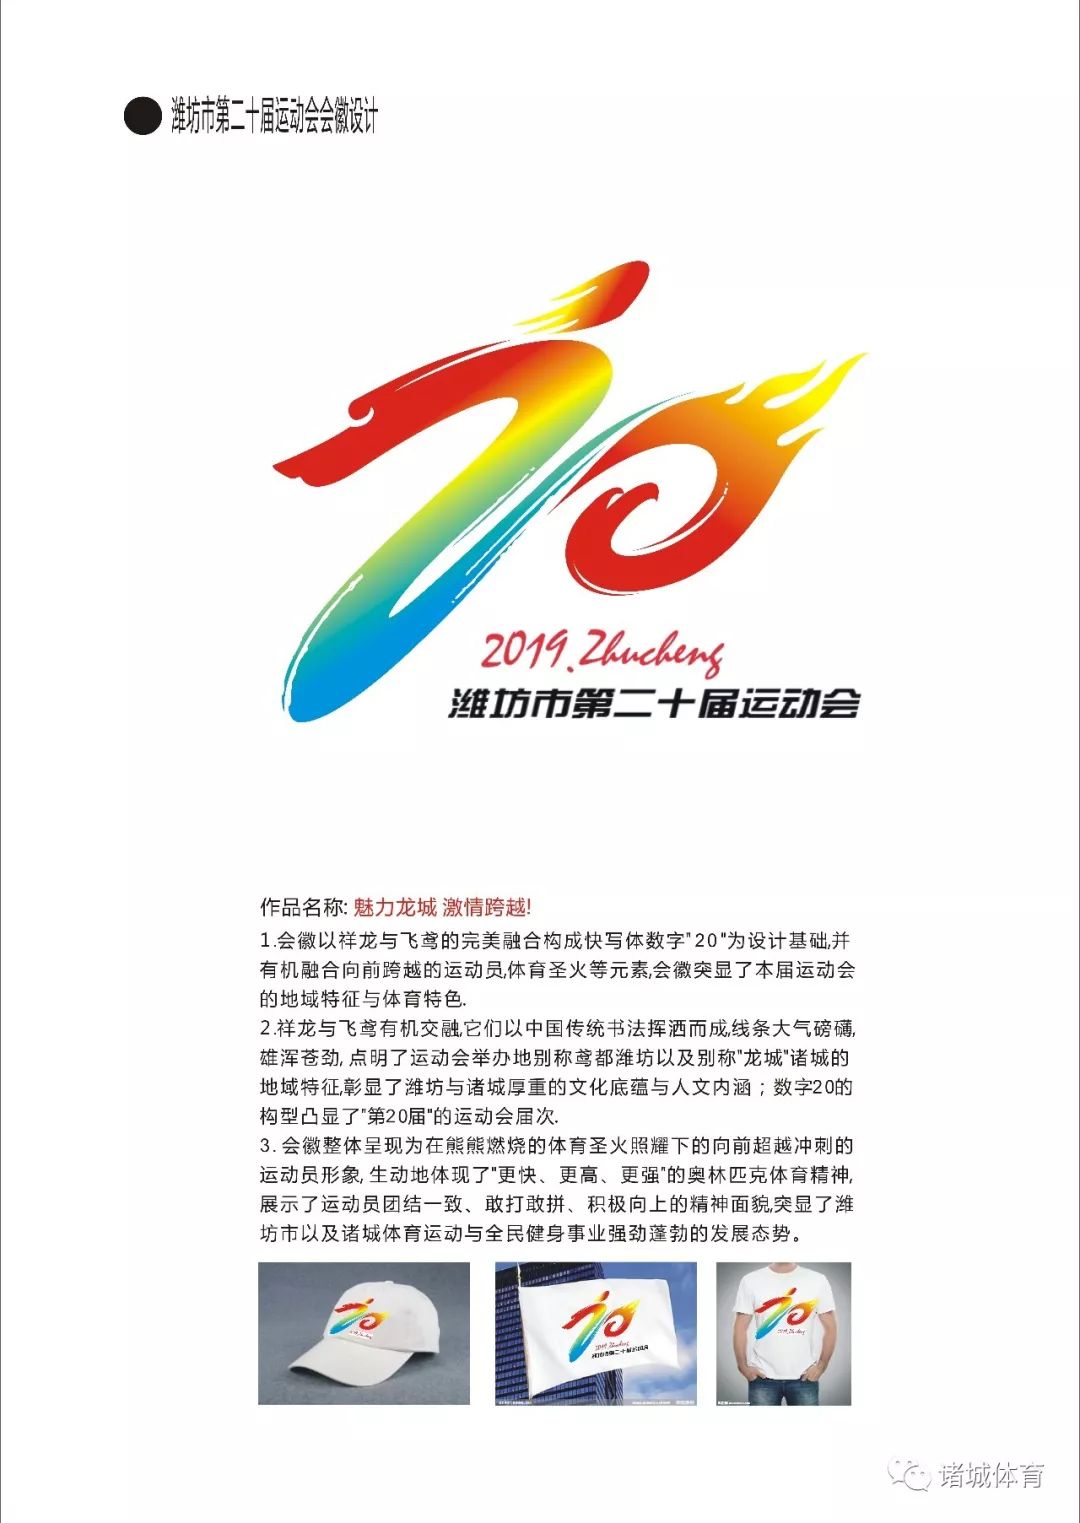 潍坊市第20届运动会会徽入围入选作品公布